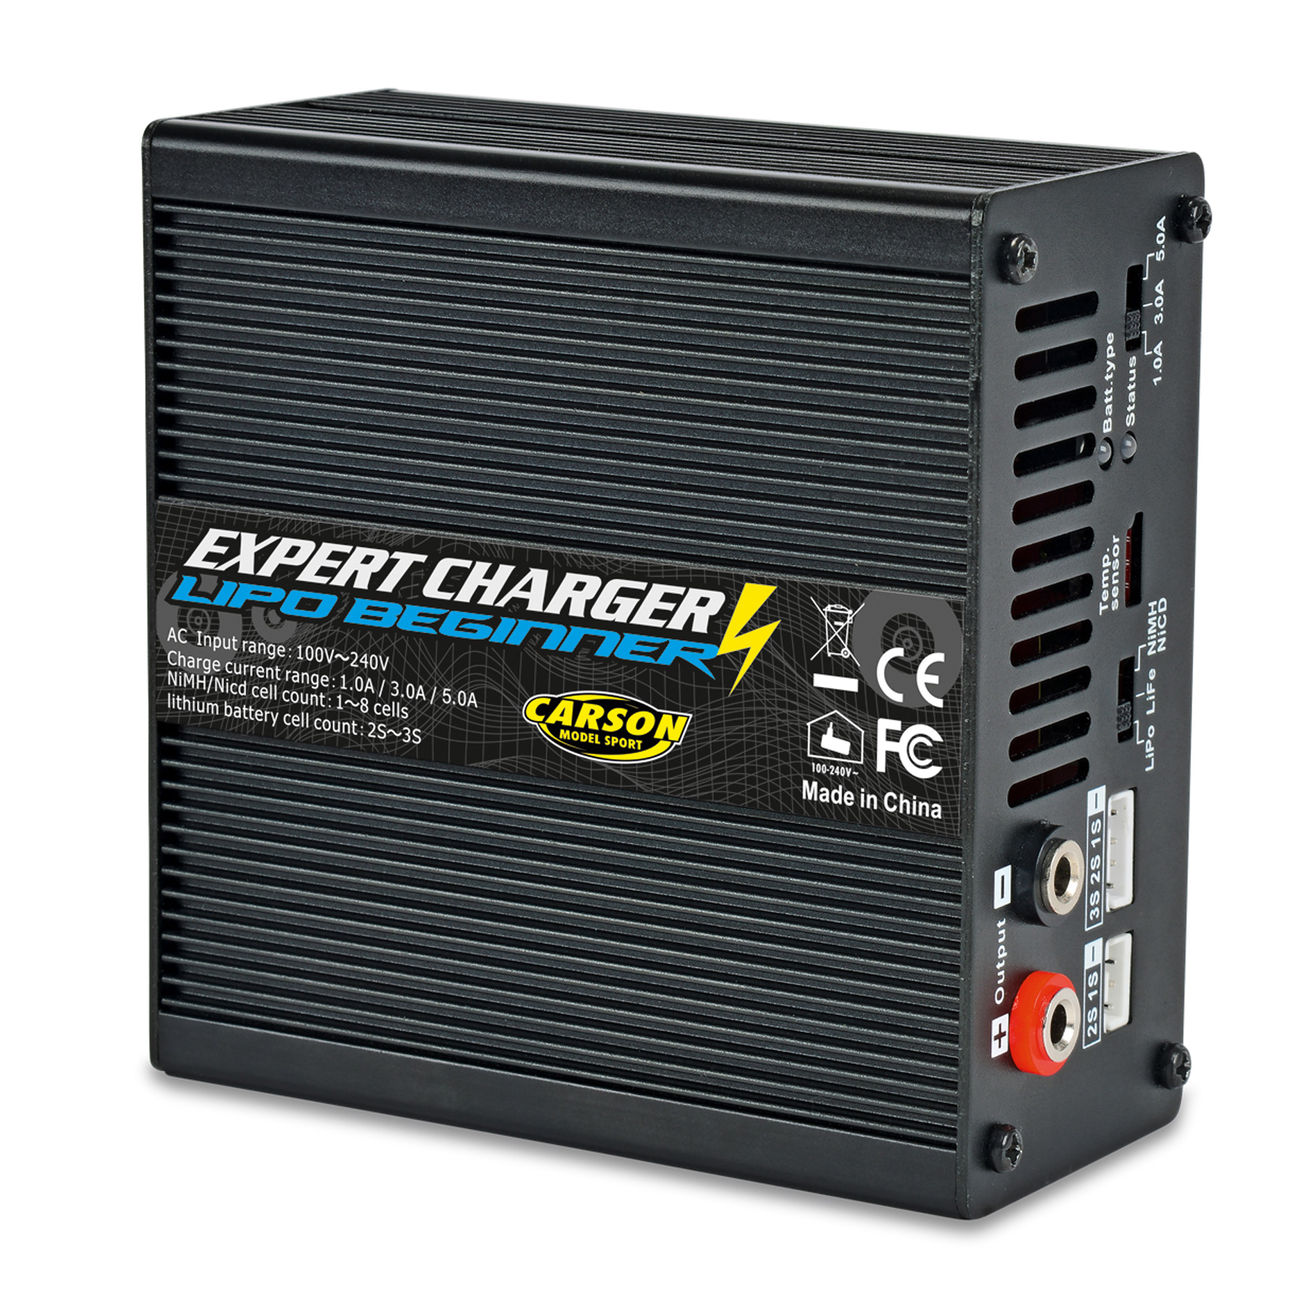 Carson Expert Charger Beginner Ladegerät LiPo / LiFe / NiMH 230V 500606064 Bild 1